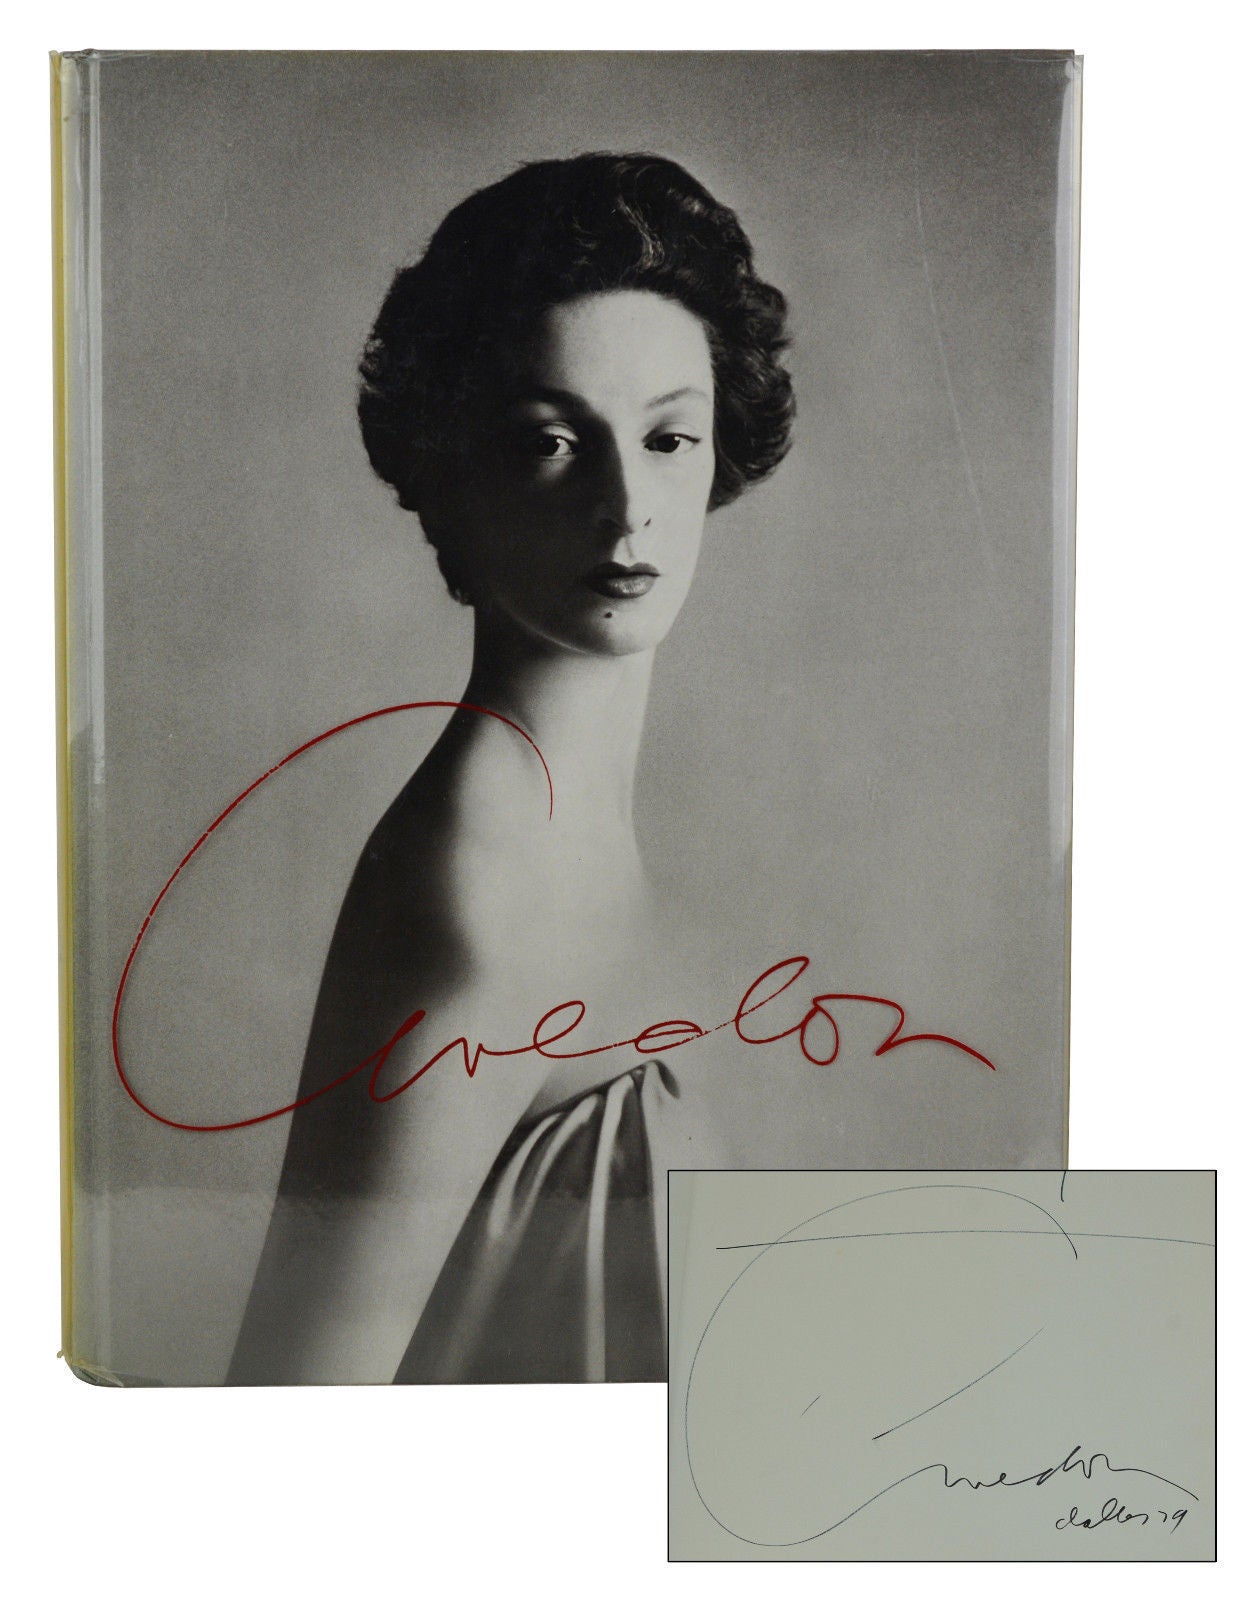 Photographs 1947-1977 by Richard Avedon on Burnside Rare Books